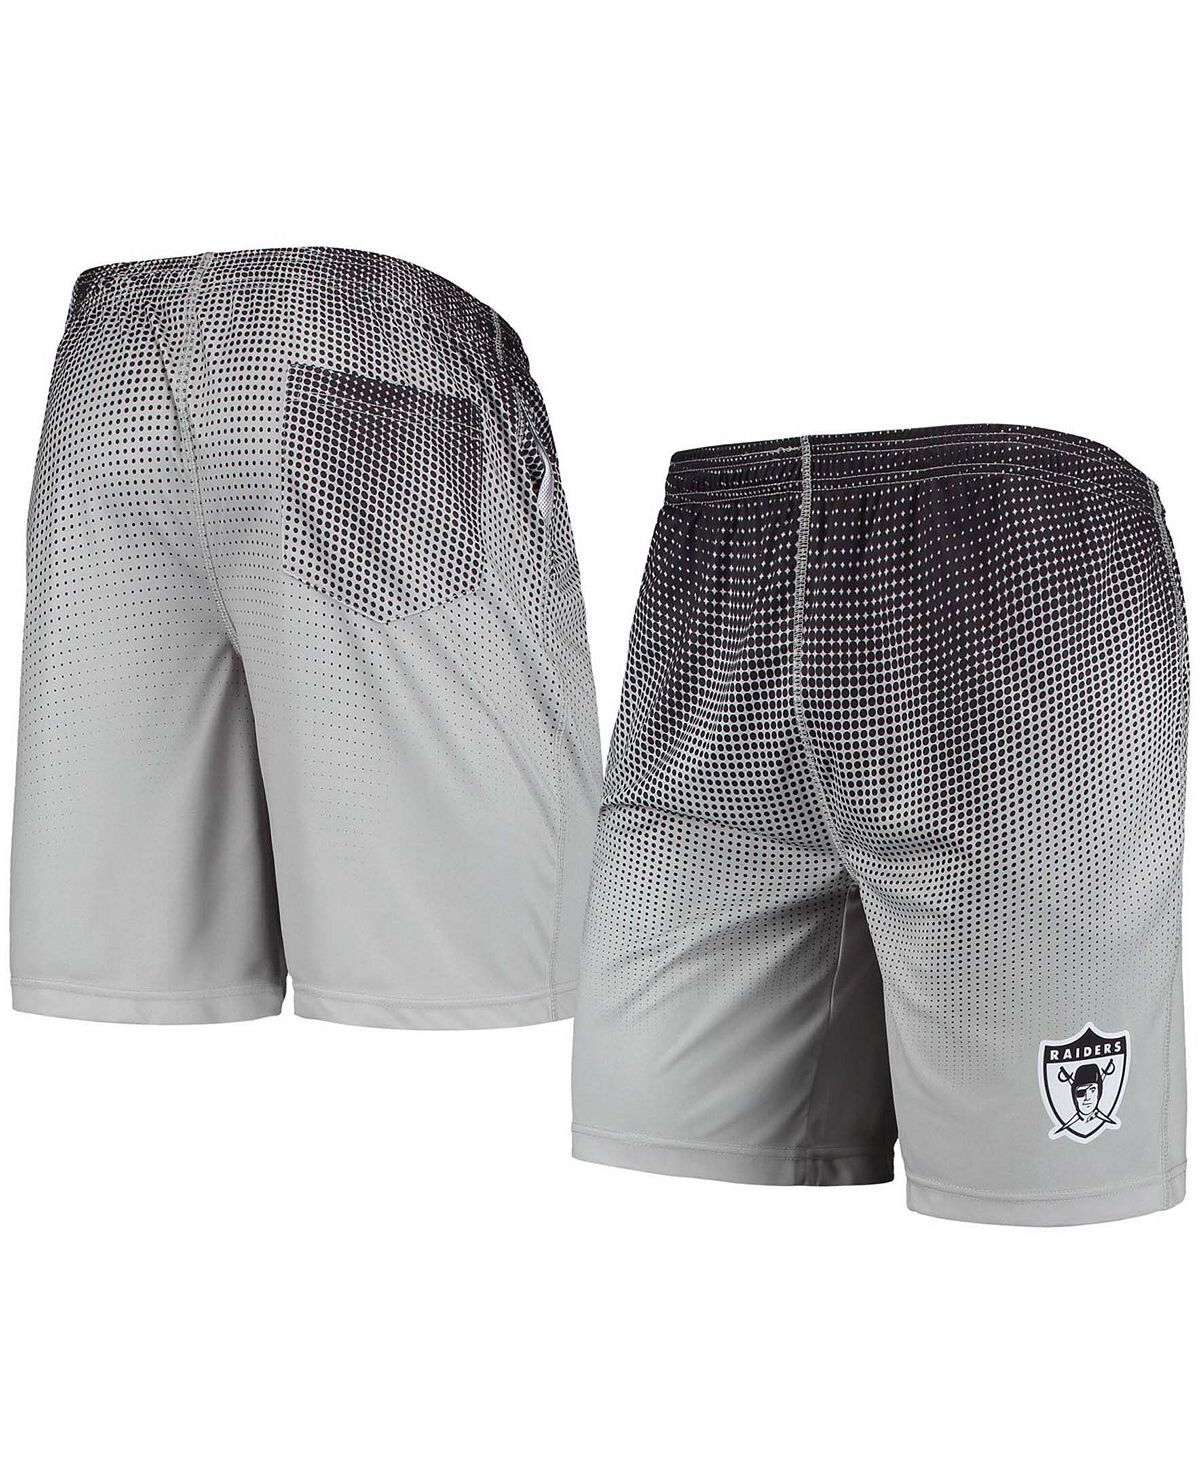 цена Мужские черно-серебристые тренировочные шорты с историческим логотипом Las Vegas Raiders и пиксельным градиентом FOCO